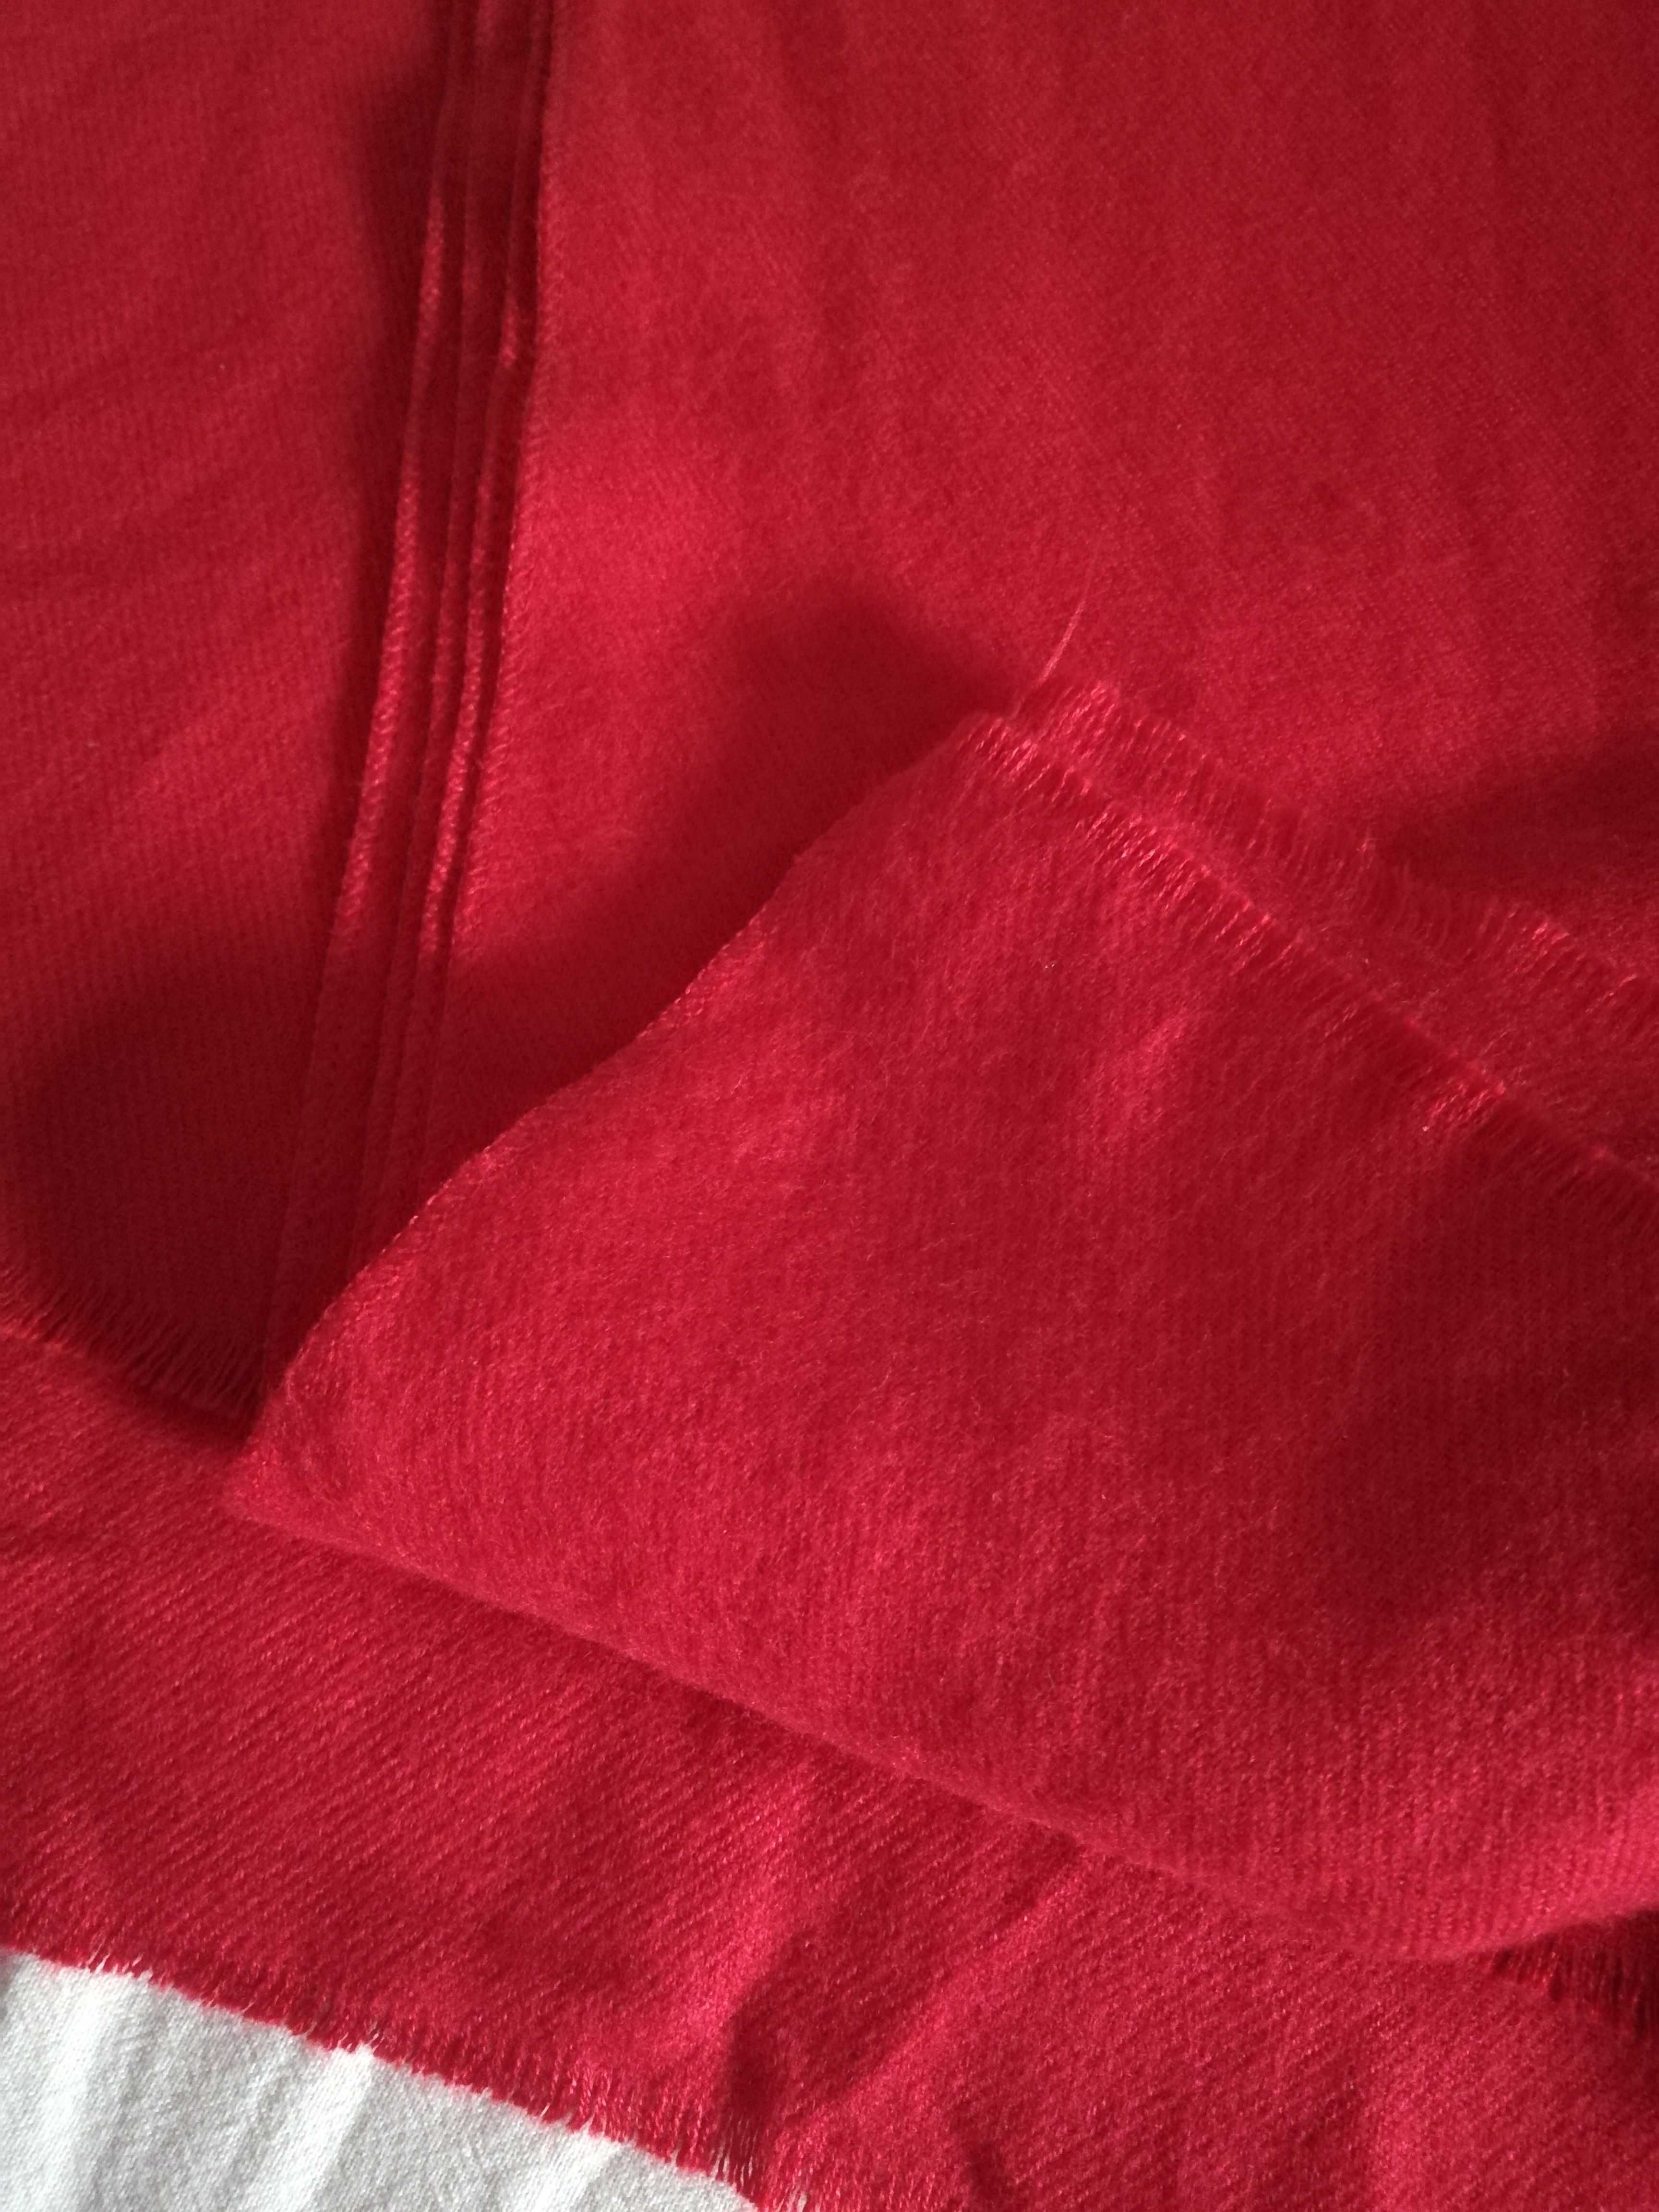 Fular rosu 40% lana, marca Sergio Bardi